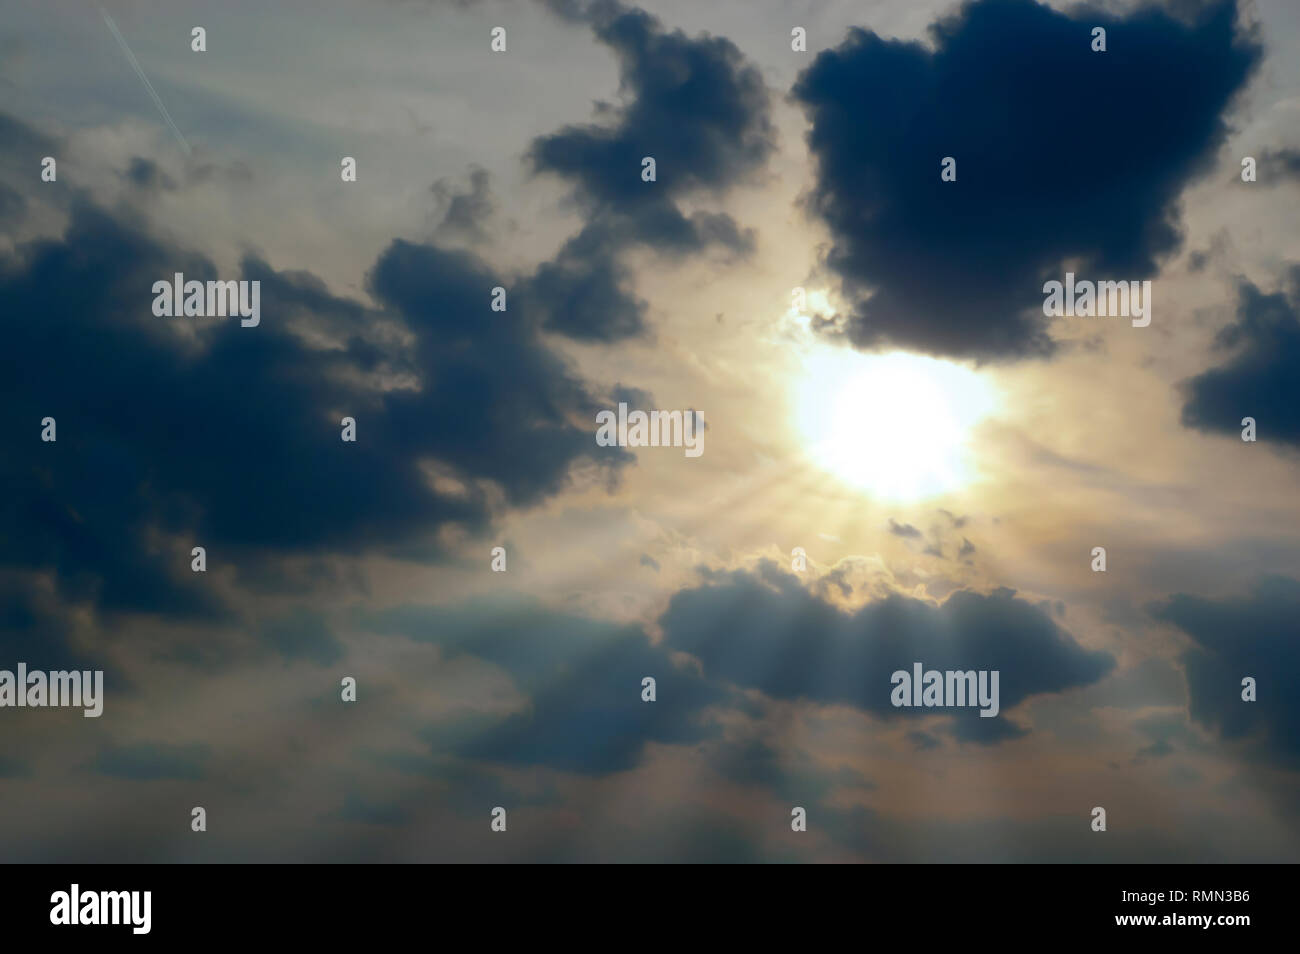 Rayos crepusculares irradian desde el Sol parcialmente cubierto por un banco de oscuras nubes estratocúmulos tardaron en el cielo después de una tormenta de verano. Foto de stock